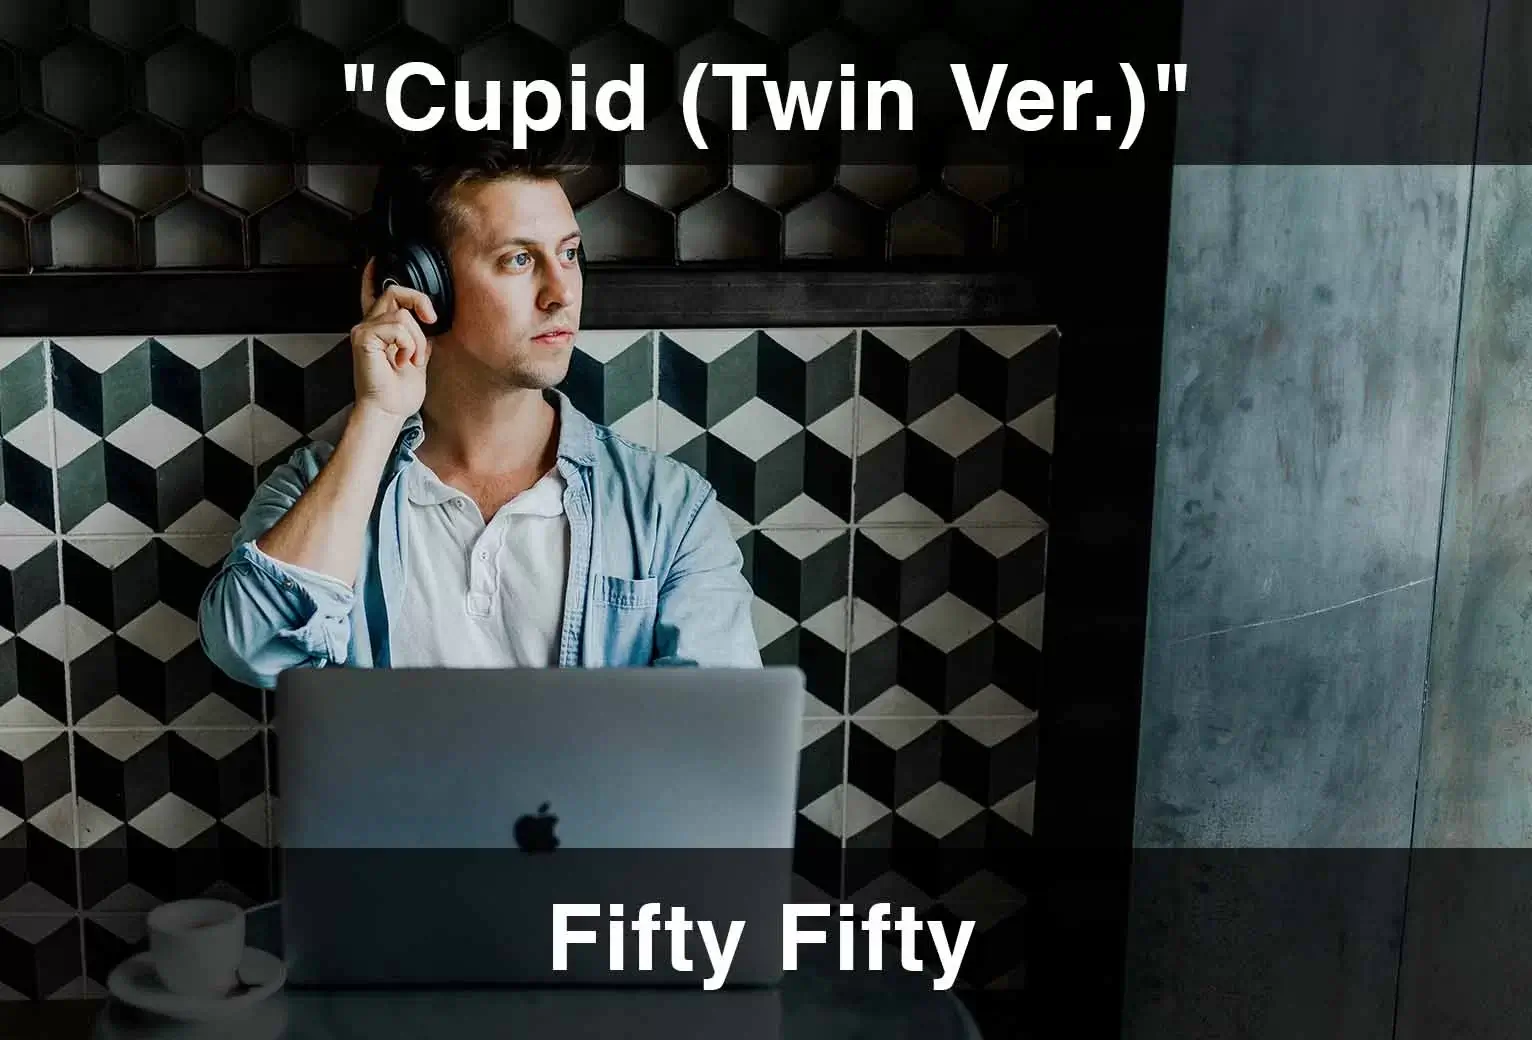 Cupid (Twin Ver.) (Tradução) – Fifty Fifty